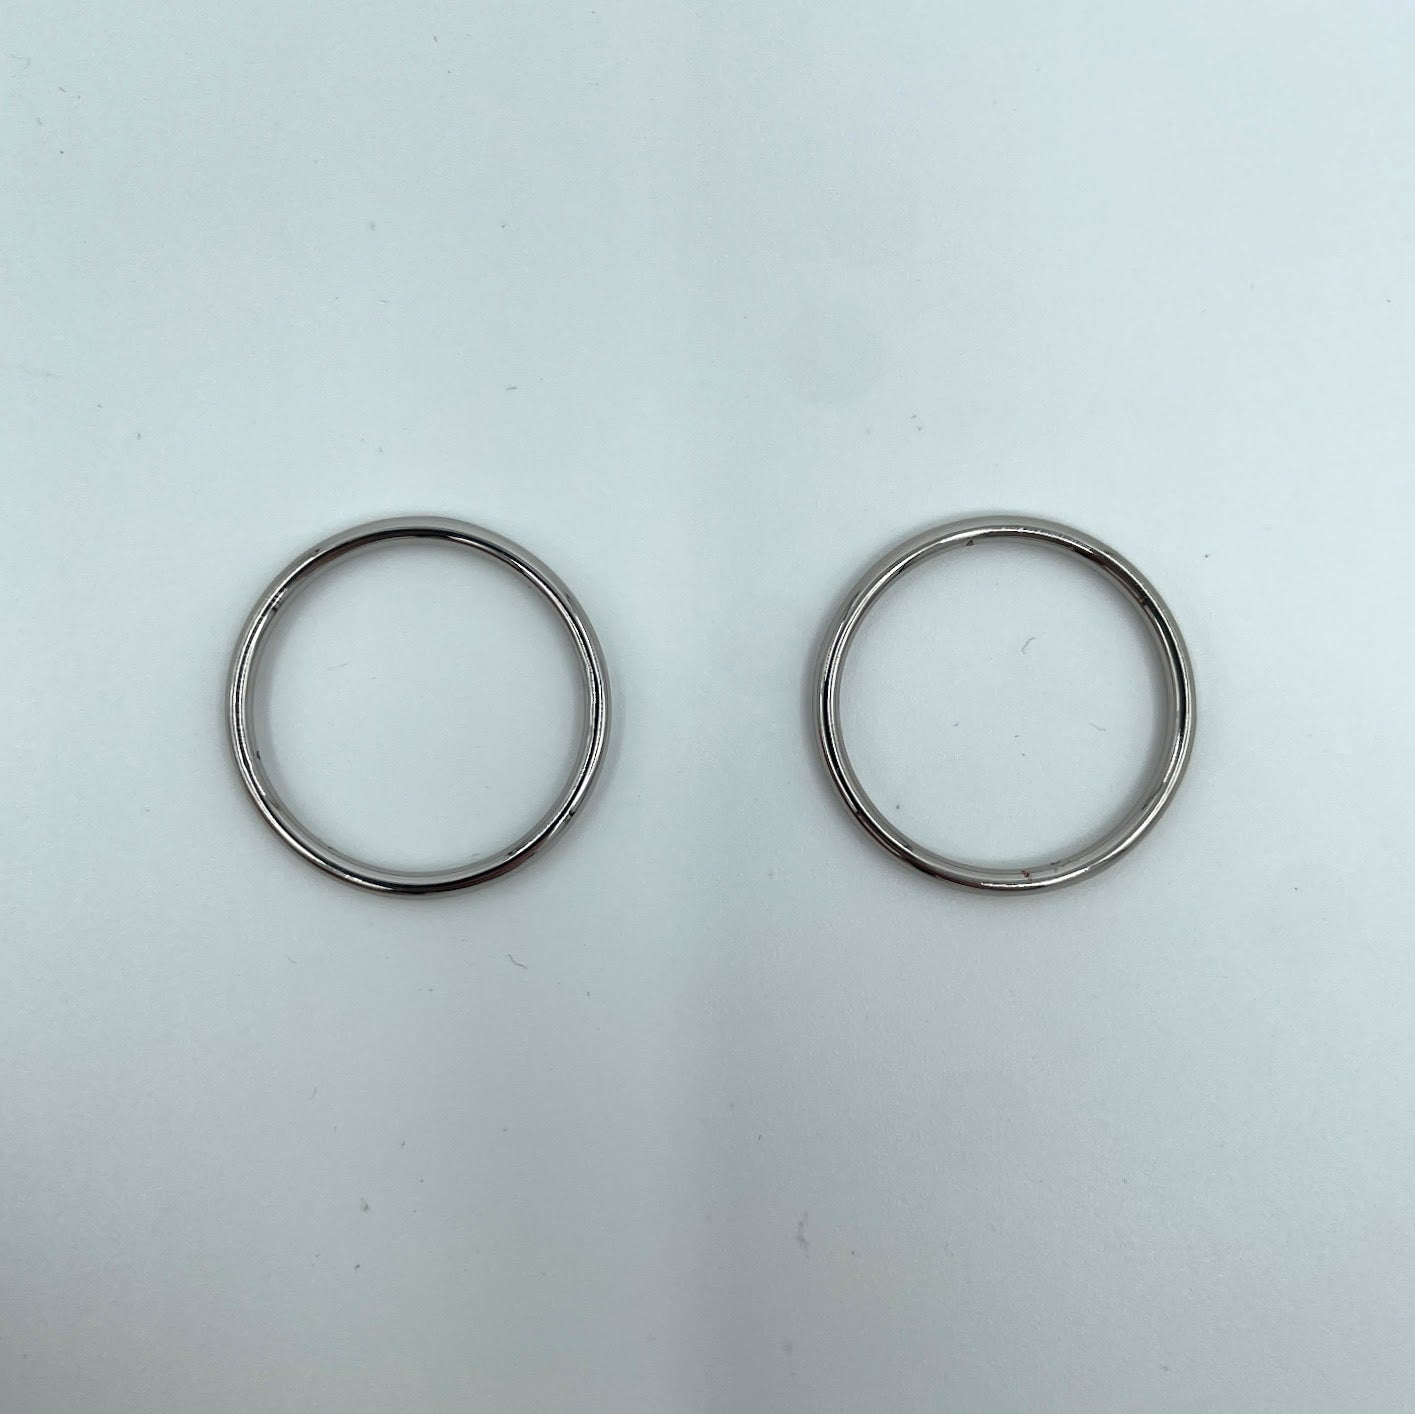 Set of 2 Rings OR 2 Sliders Bra Strap Sliders in Black- 3/8 (10mm